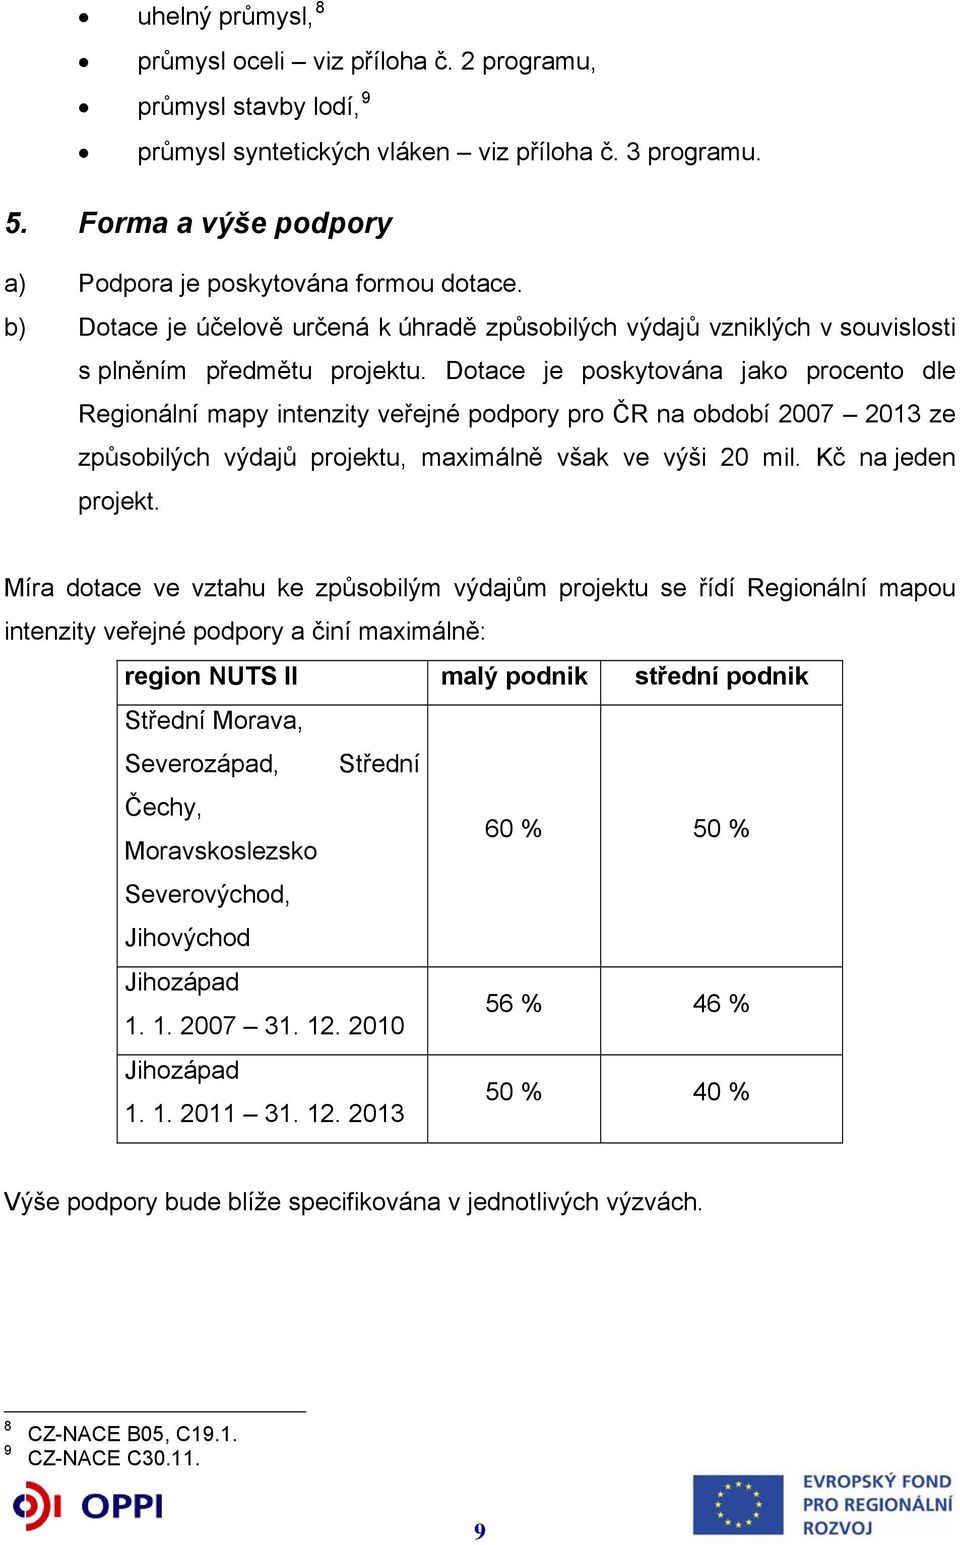 Dotace je poskytována jako procento dle Regionální mapy intenzity veřejné podpory pro ČR na období 2007 2013 ze způsobilých výdajů projektu, maximálně však ve výši 20 mil. Kč na jeden projekt.